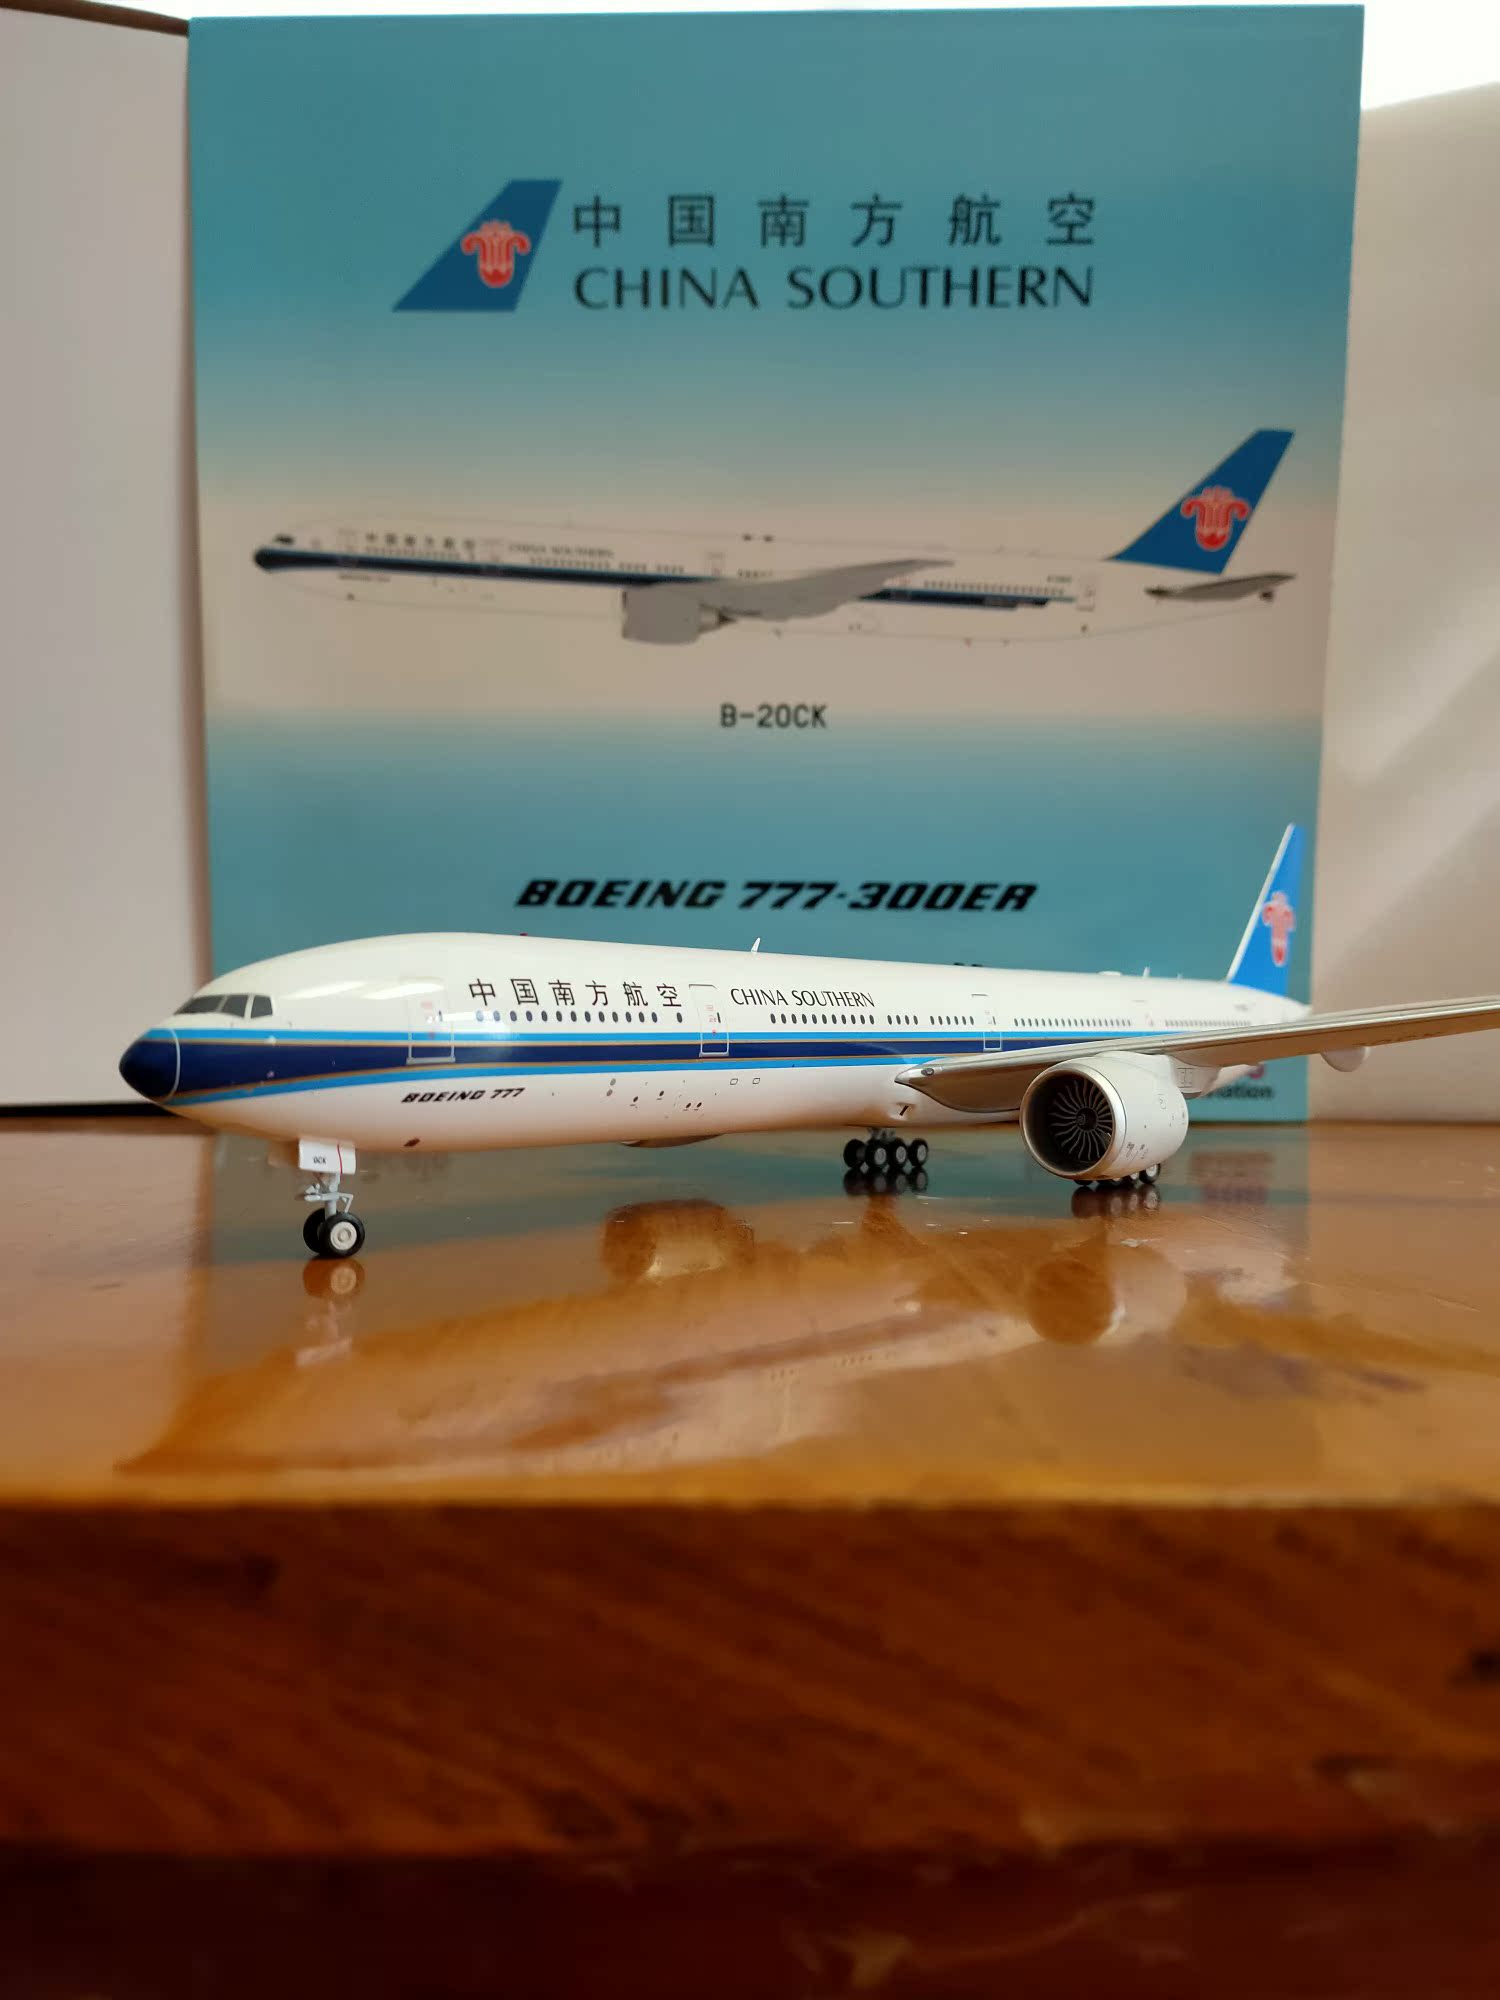 特惠Aviation 1/200 合金中国南方航空波音777-300ER B-20CK